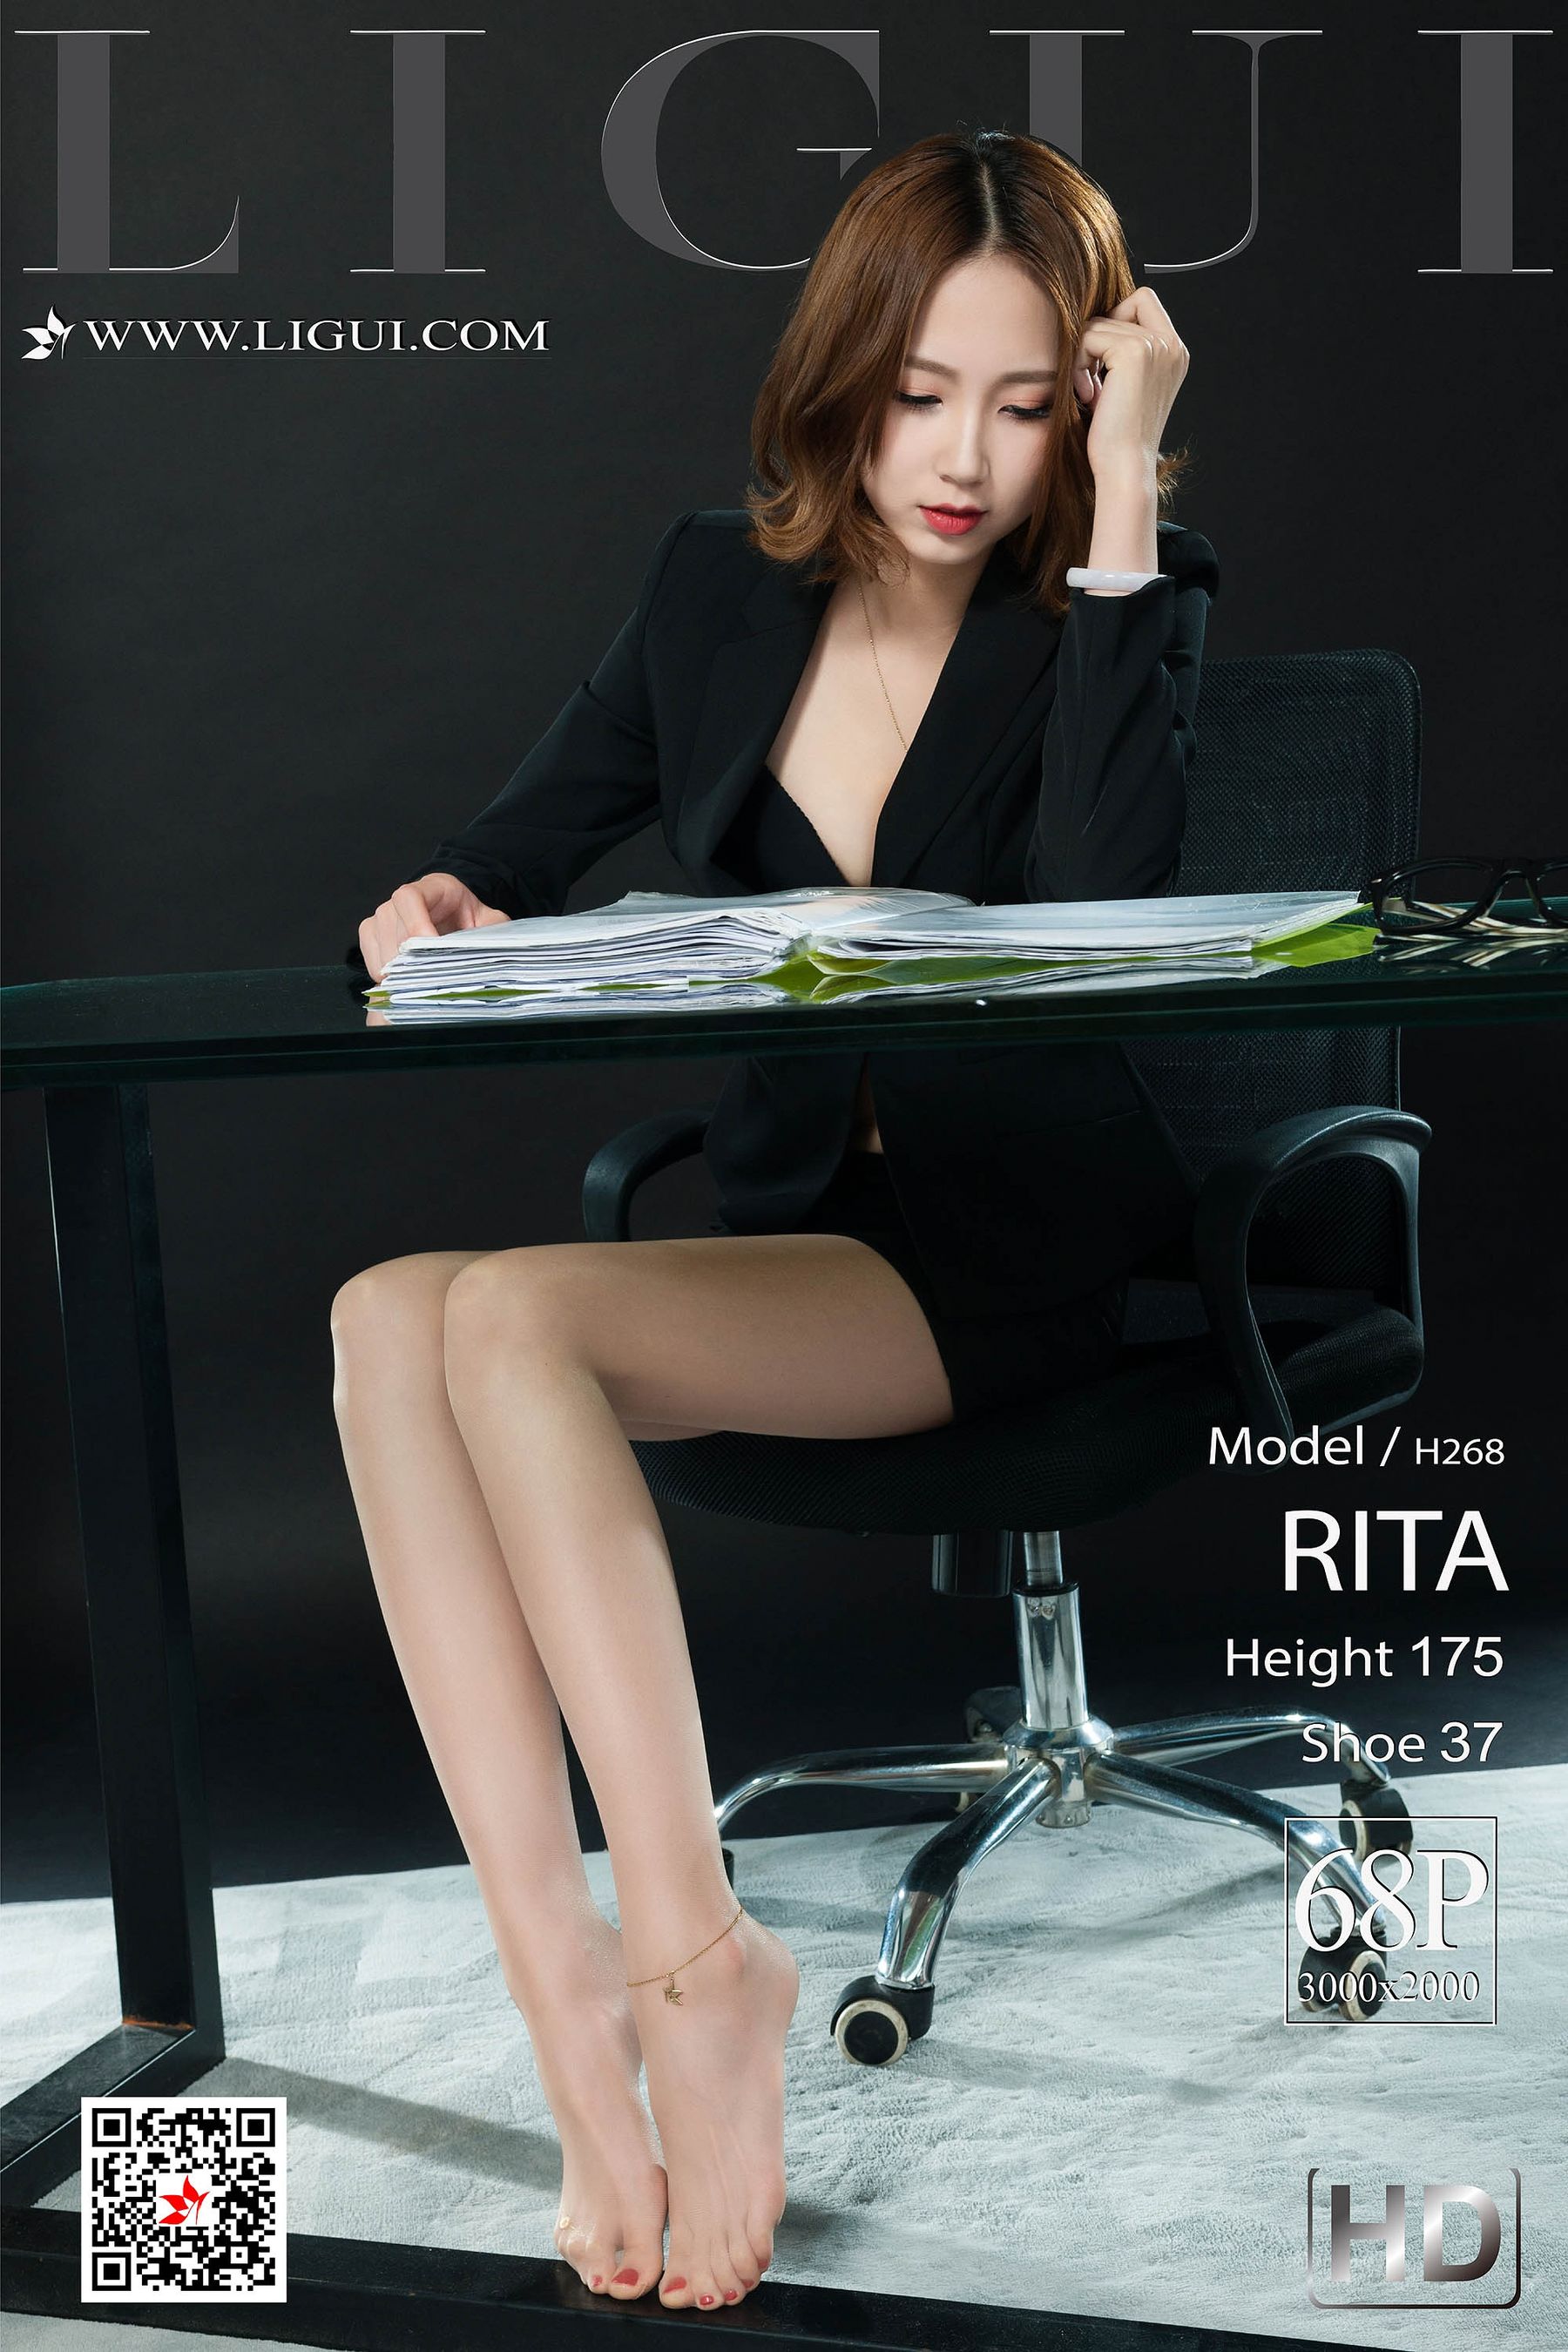 [丽柜LiGui] 网络丽人 Model RITA  第5张